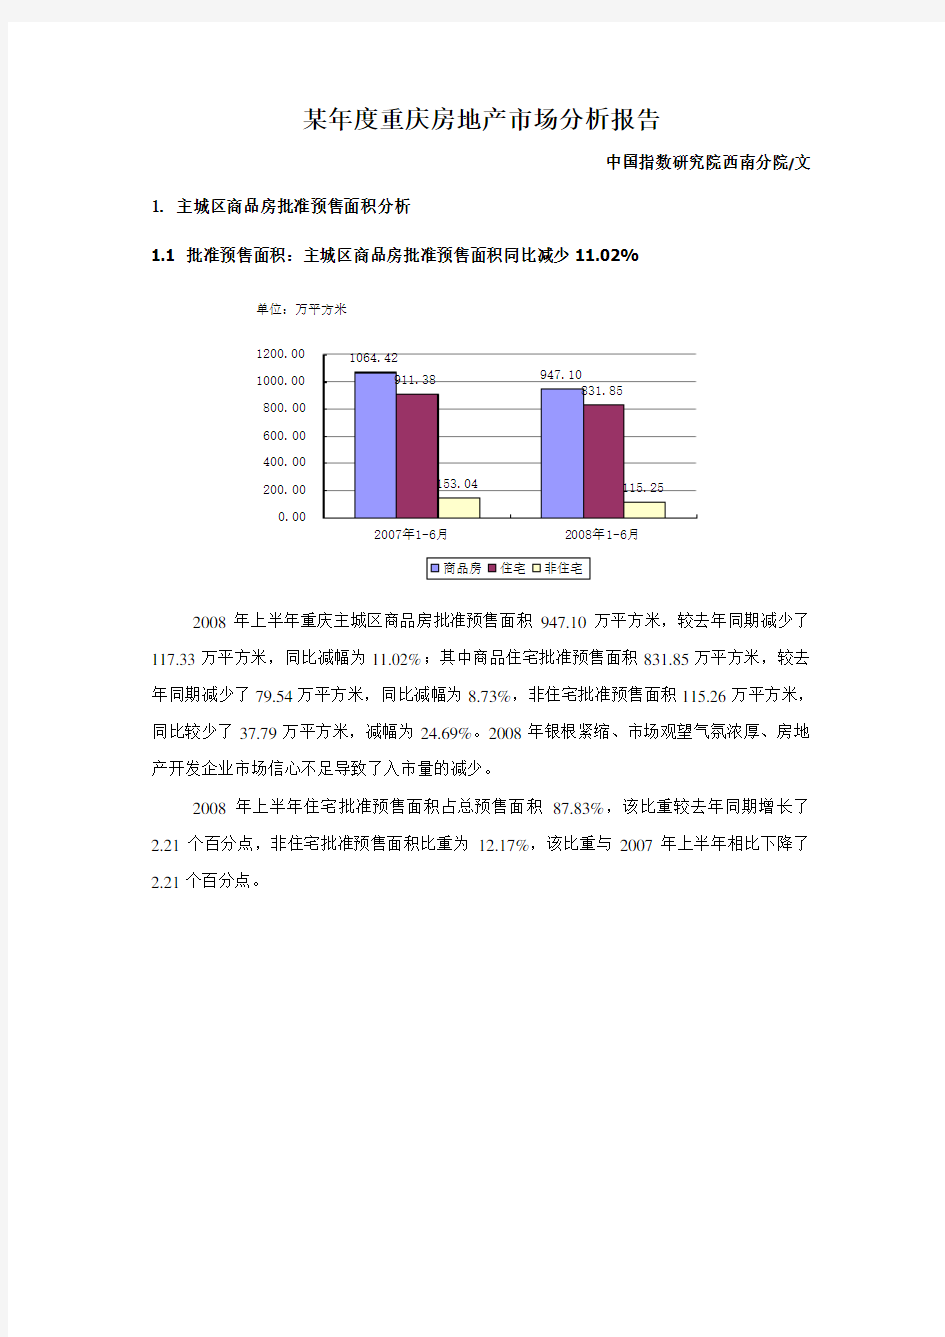 重庆市房地产市场分析报告